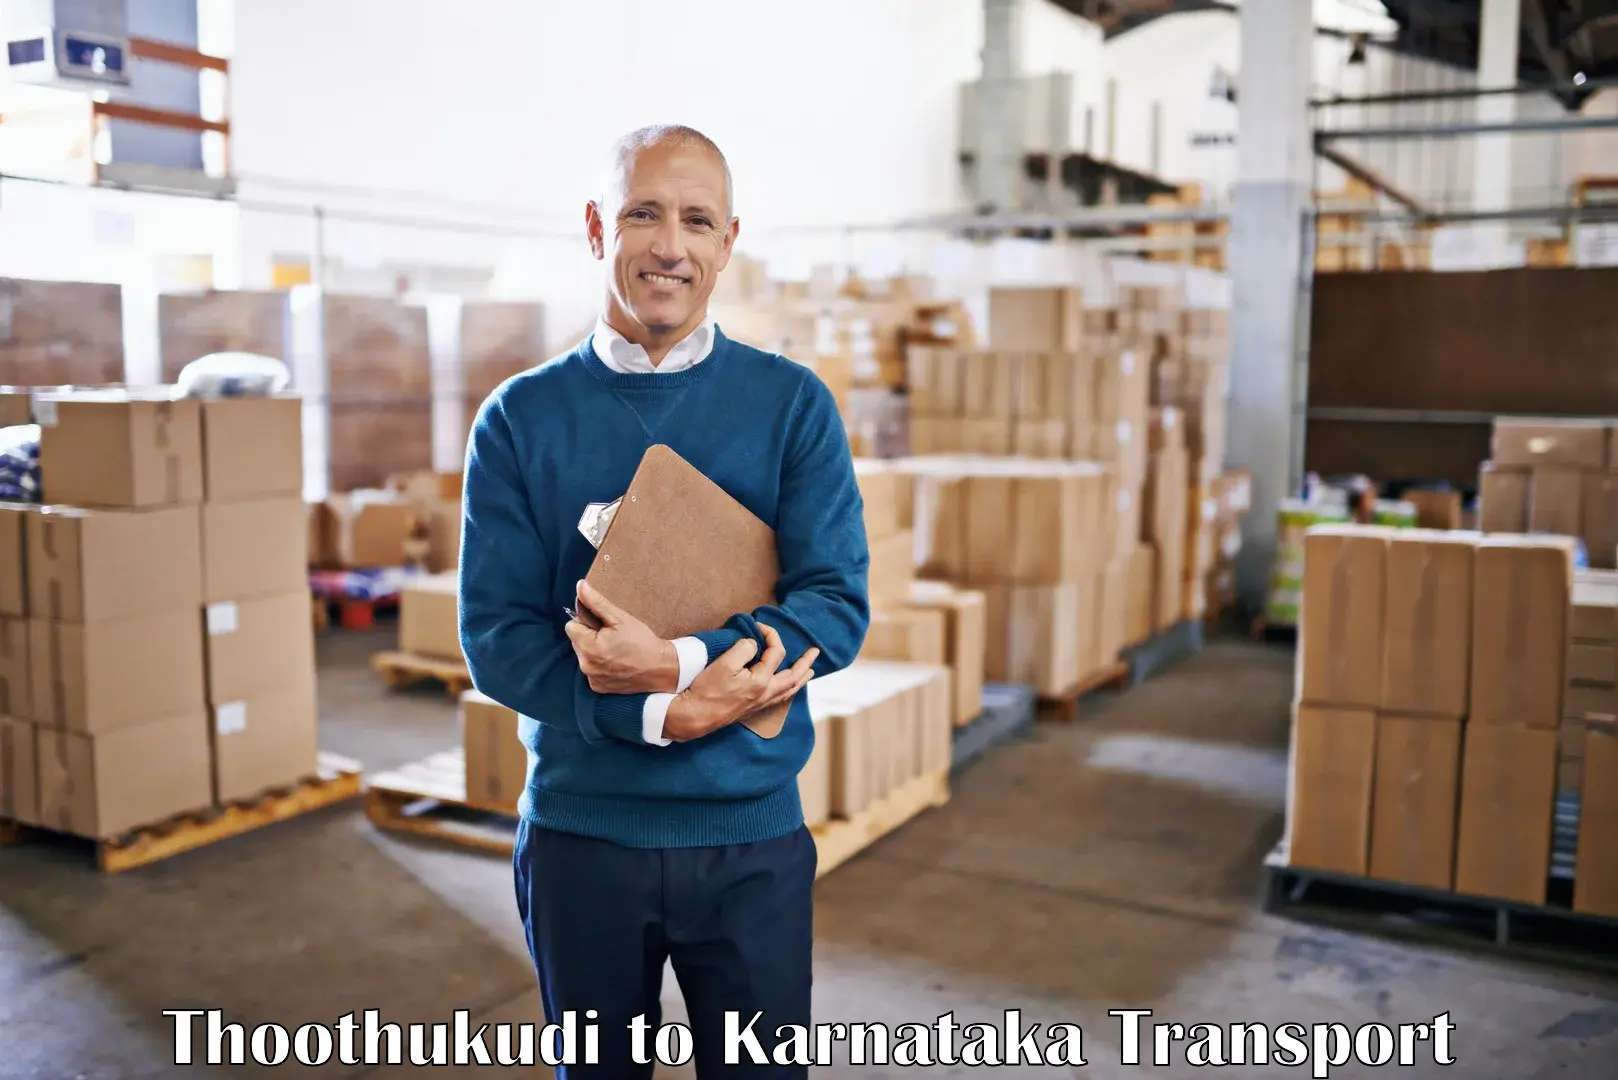 Delivery service Thoothukudi to Dharmasthala